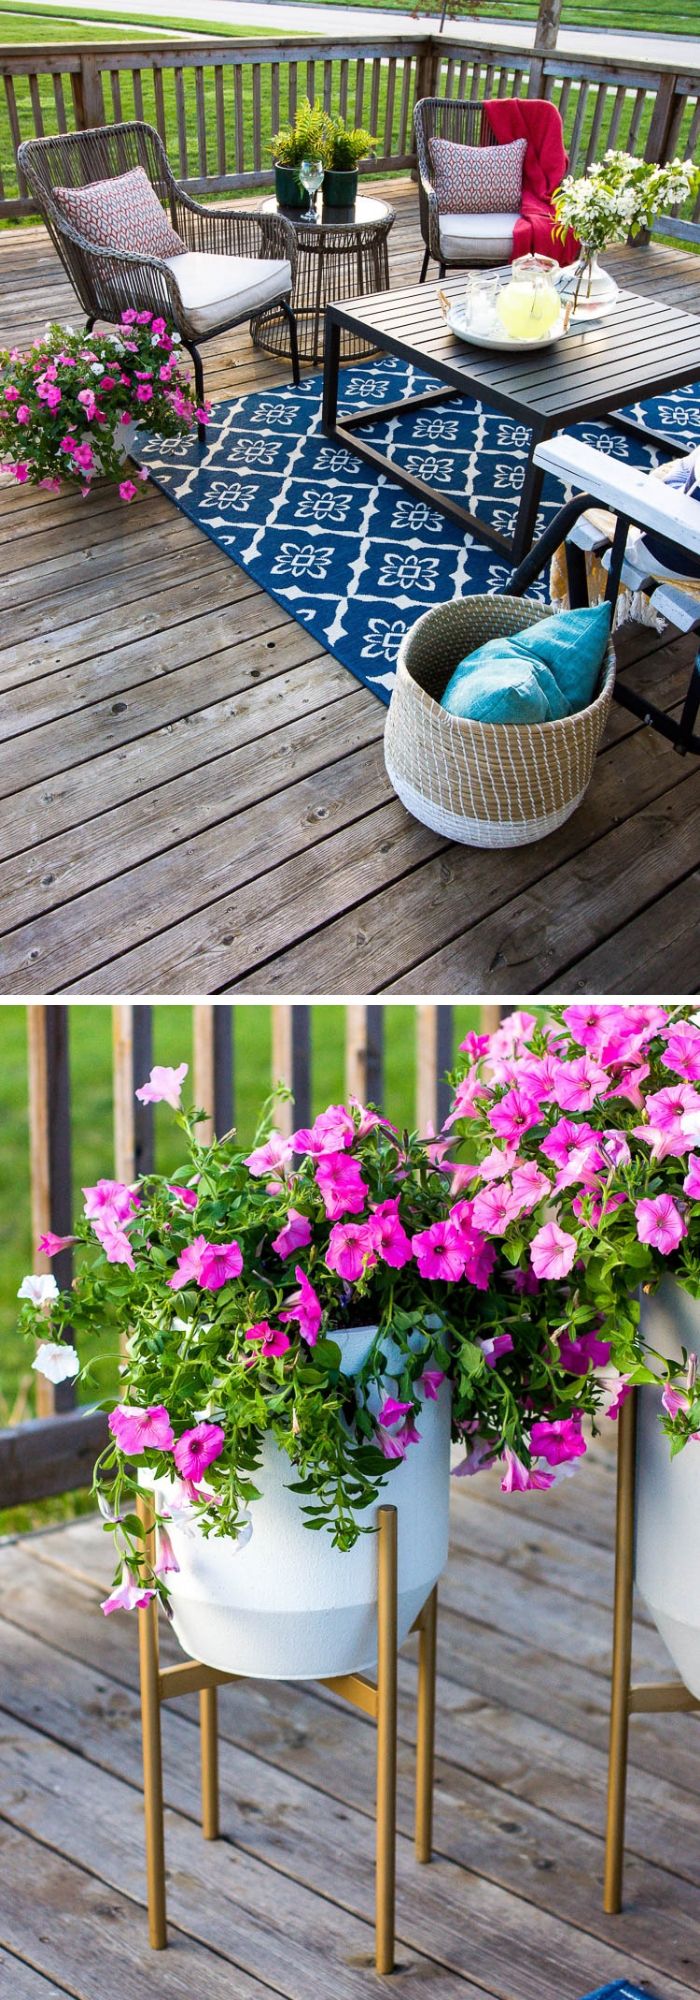 8 summer diy porch decor ideas